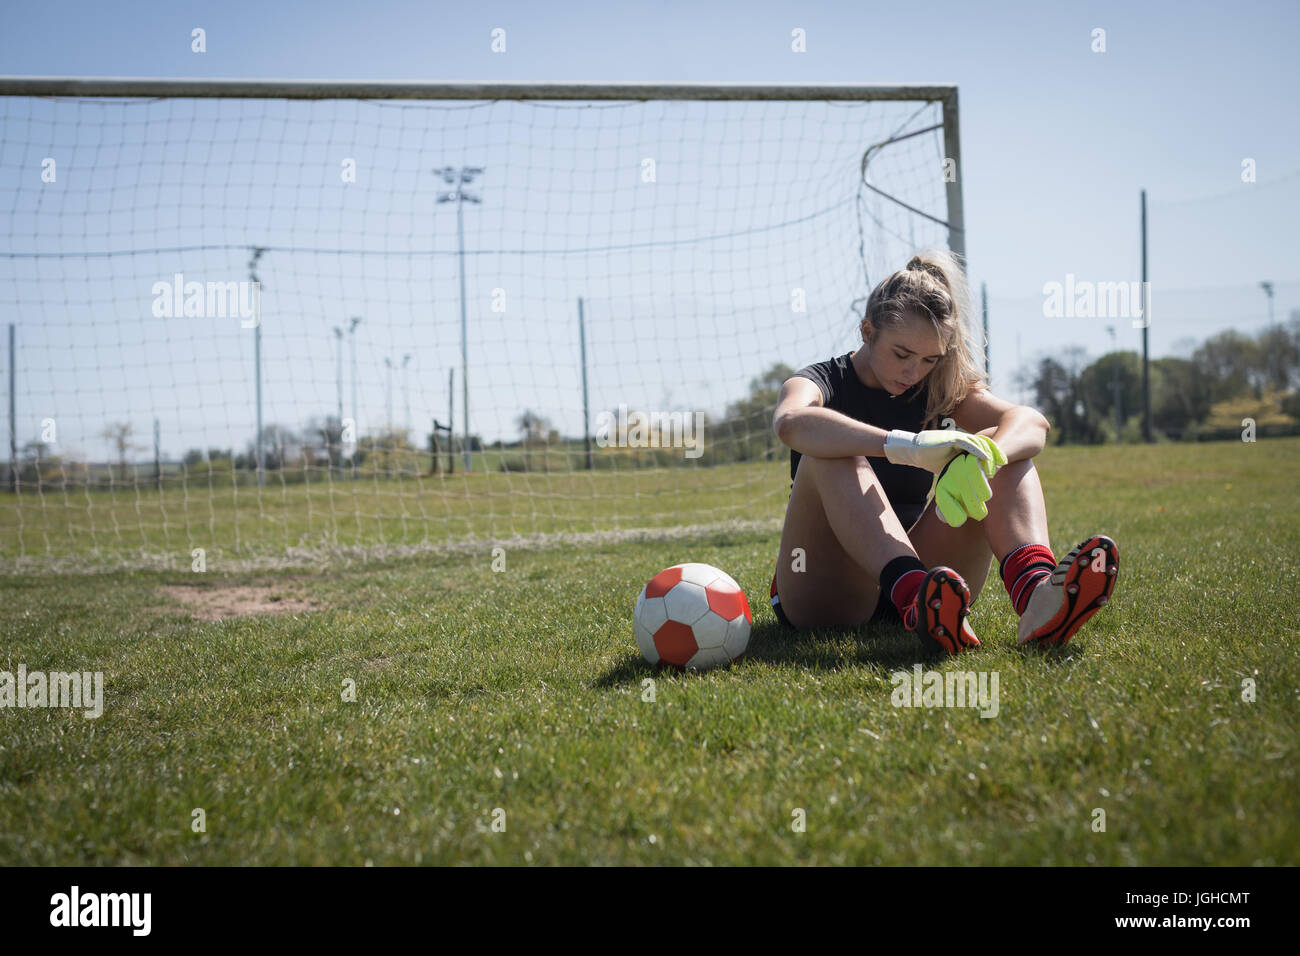 Toute la longueur du joueur de soccer féminin fatigués détente sur terrain de jeu Banque D'Images